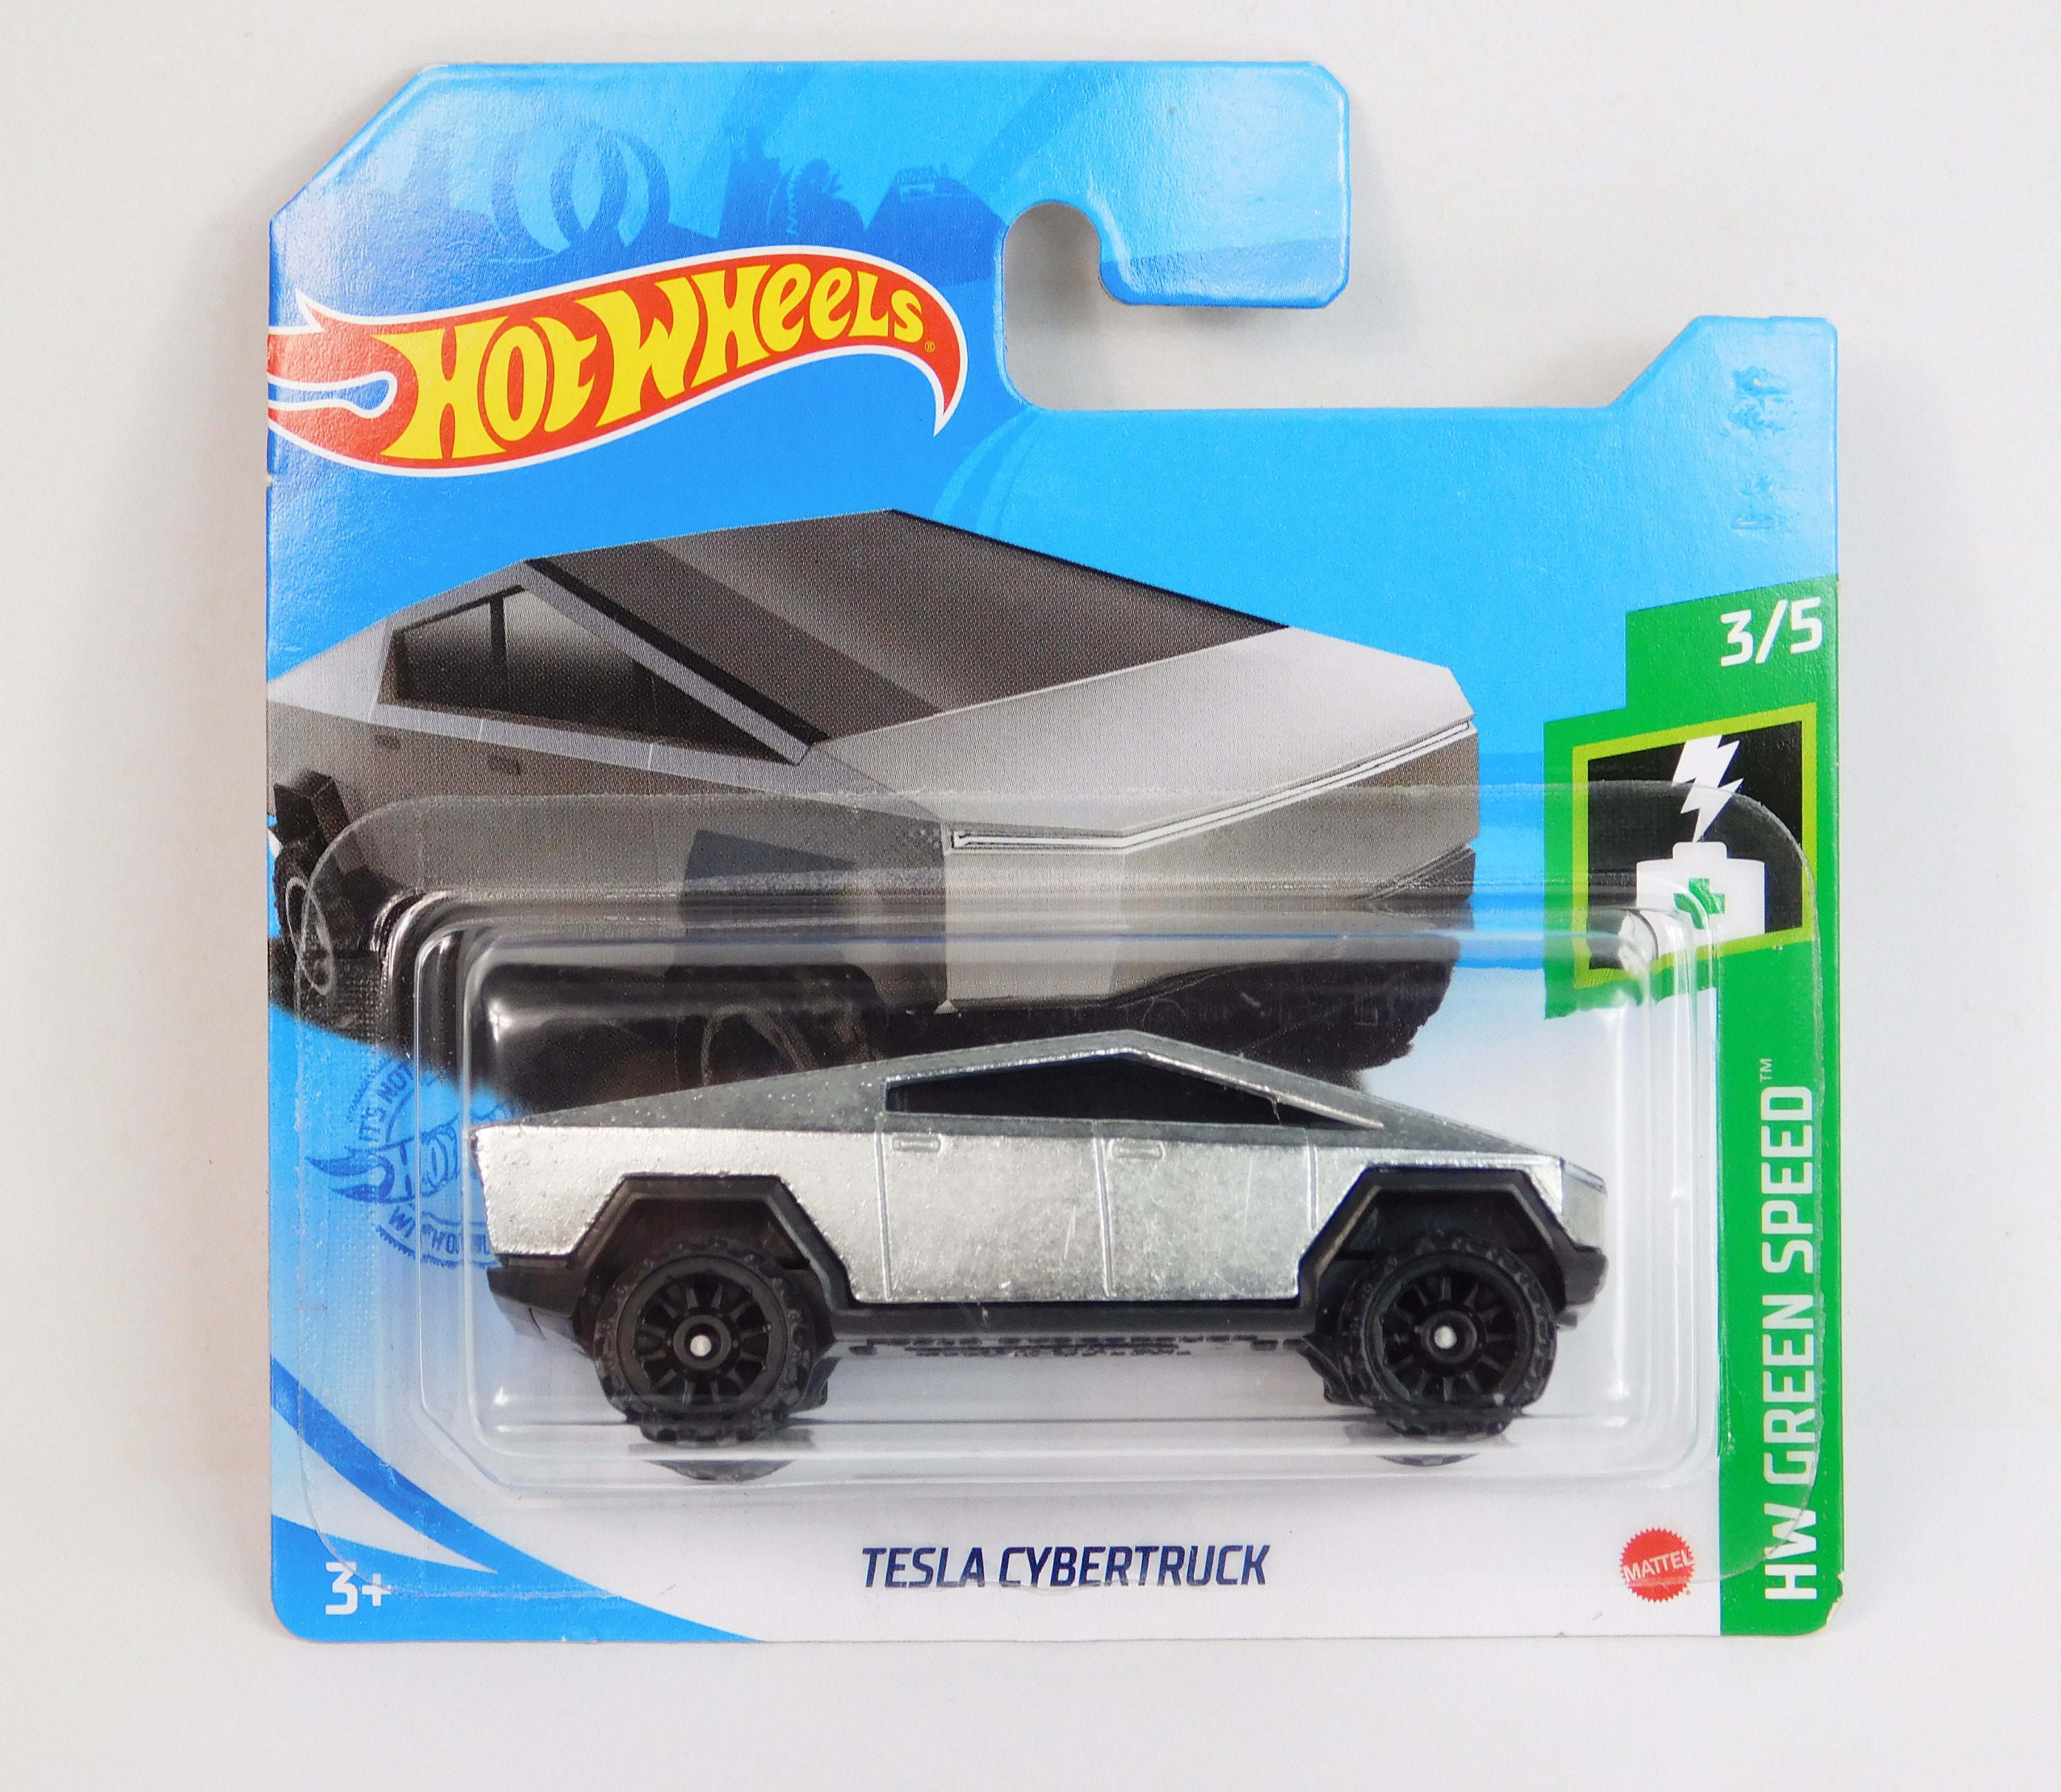 Cyber truck model - .de